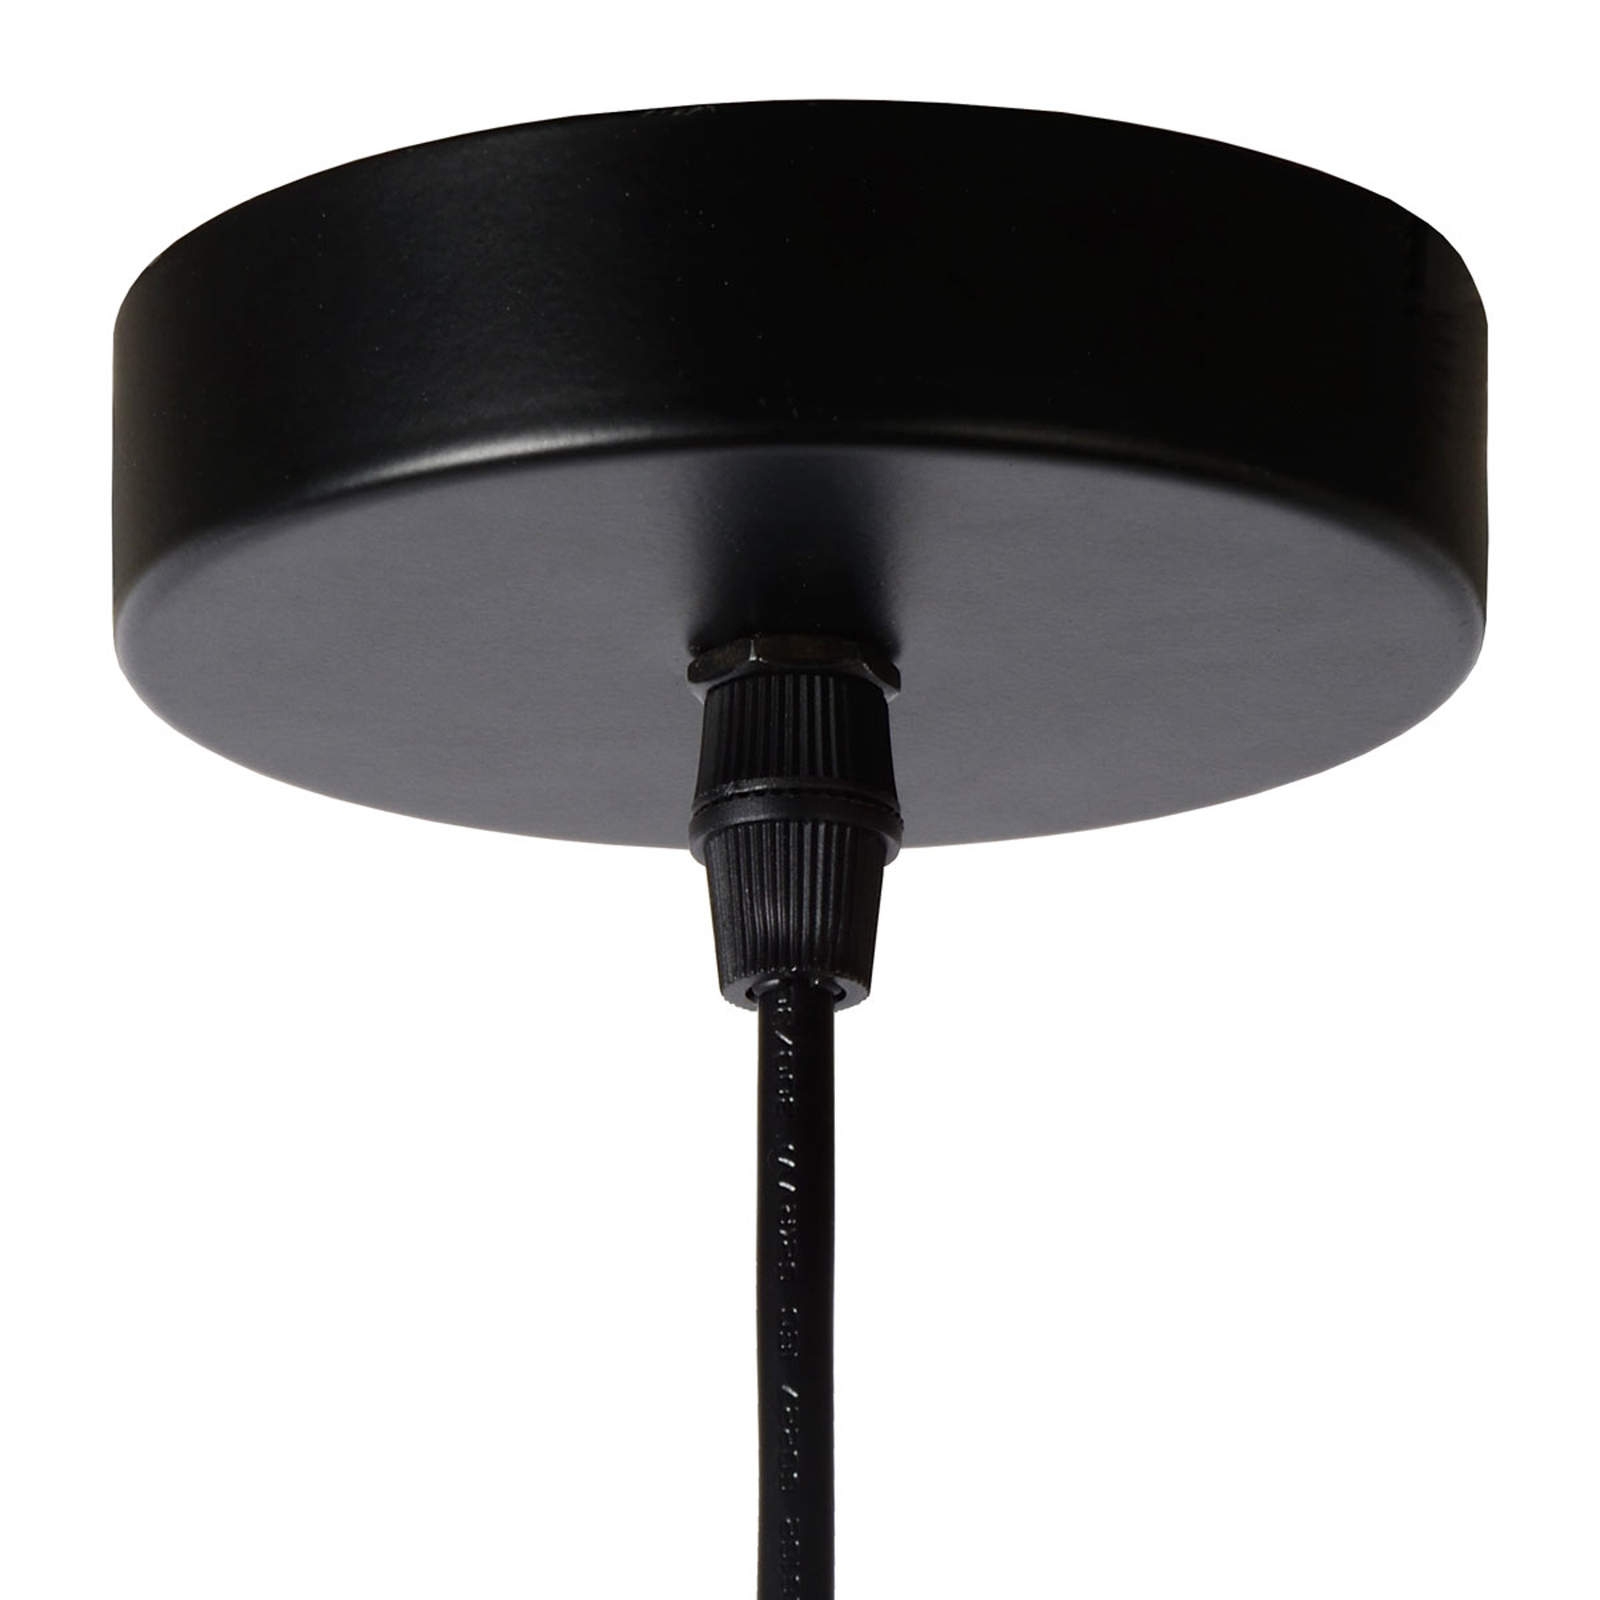 Orrin metalen hanglamp, 1-lamp